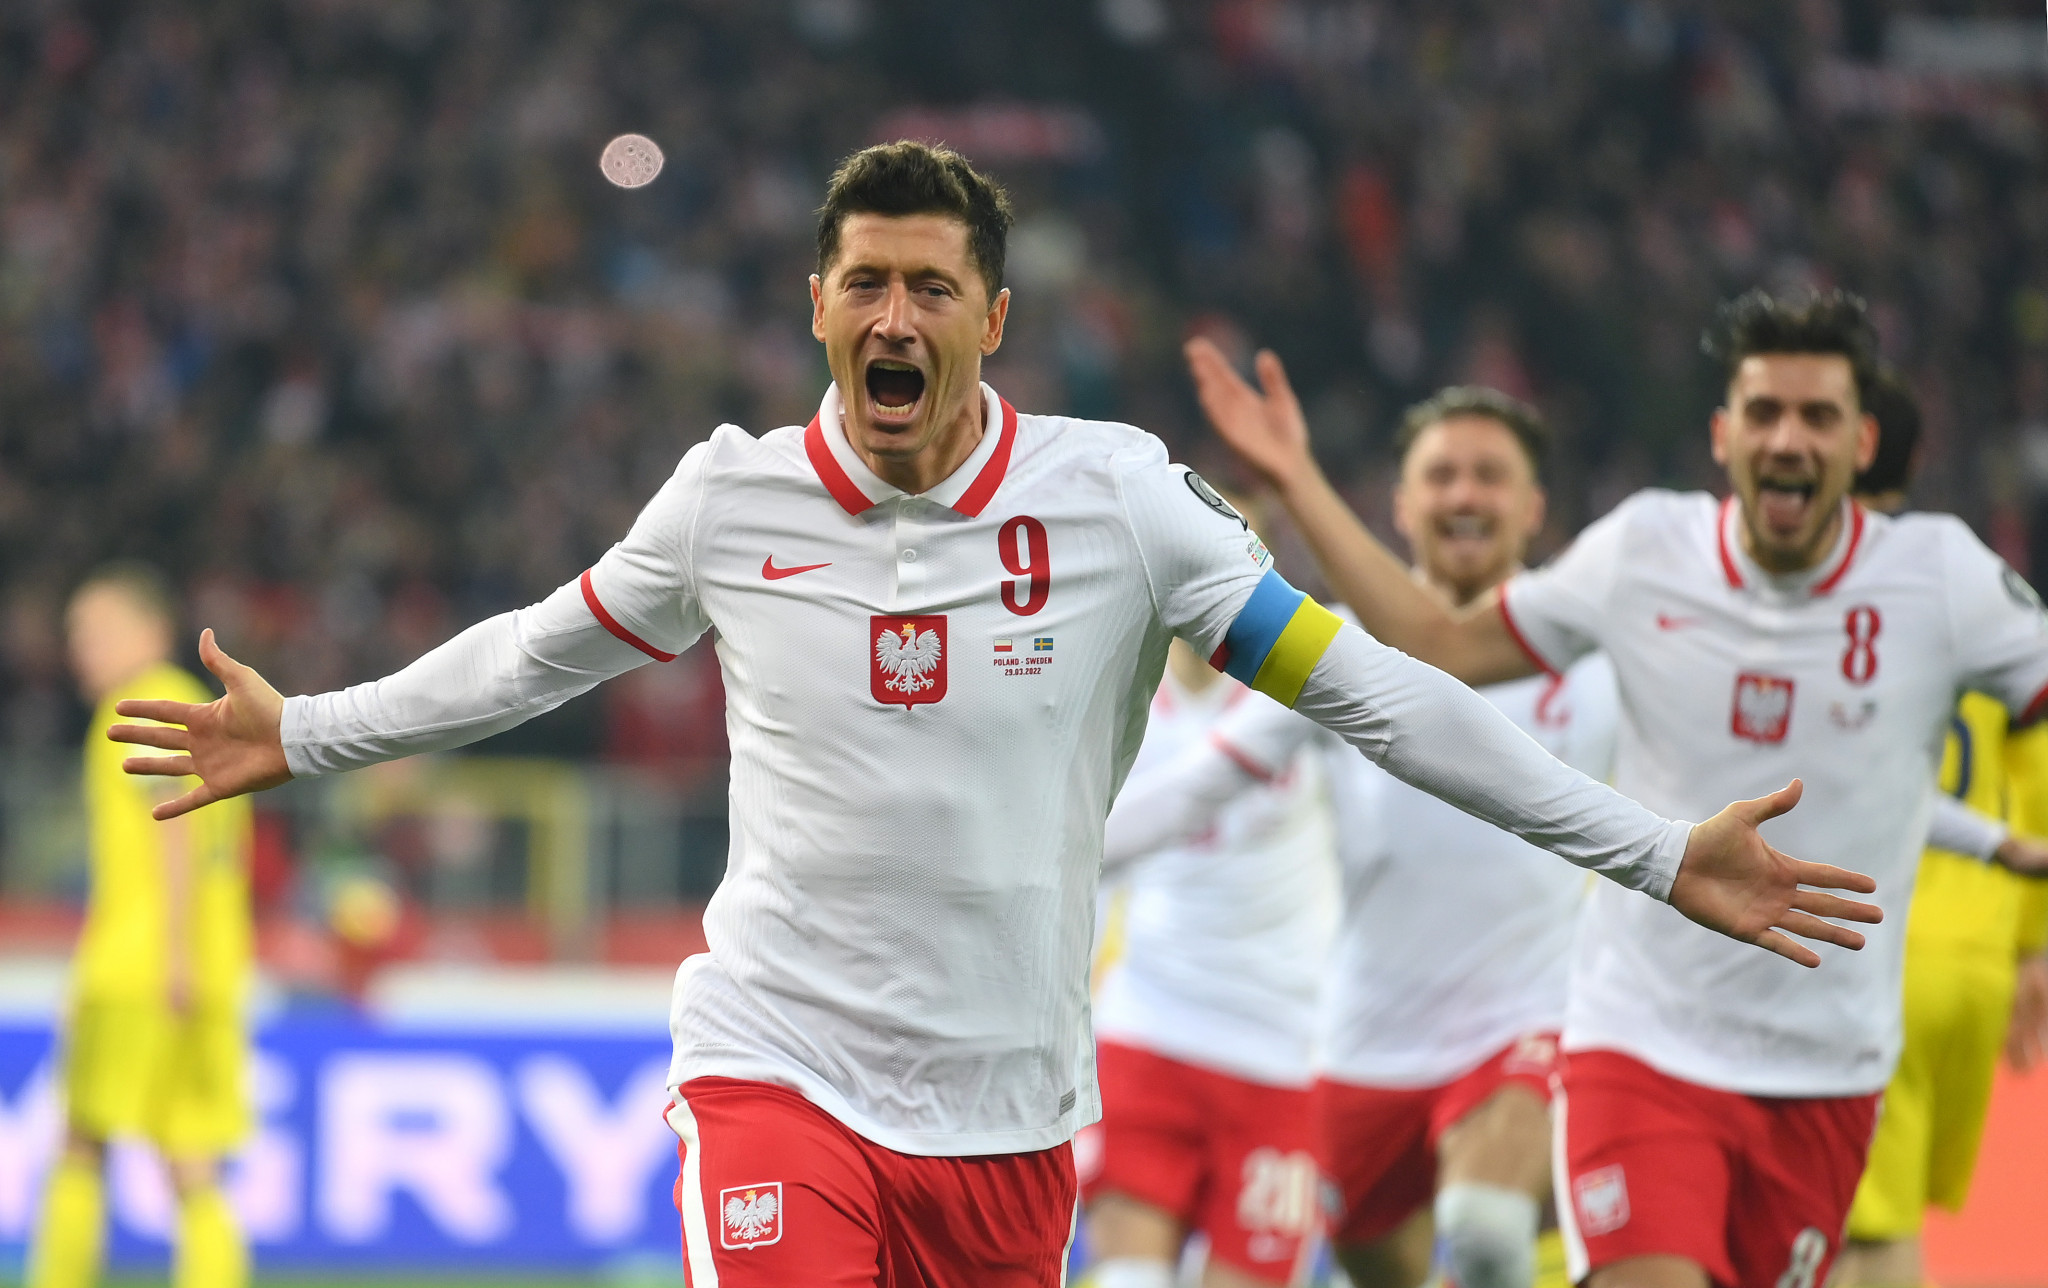 Robert Lewandowski scored the first goal as Poland beat Sweden 2-0 ©Getty Images